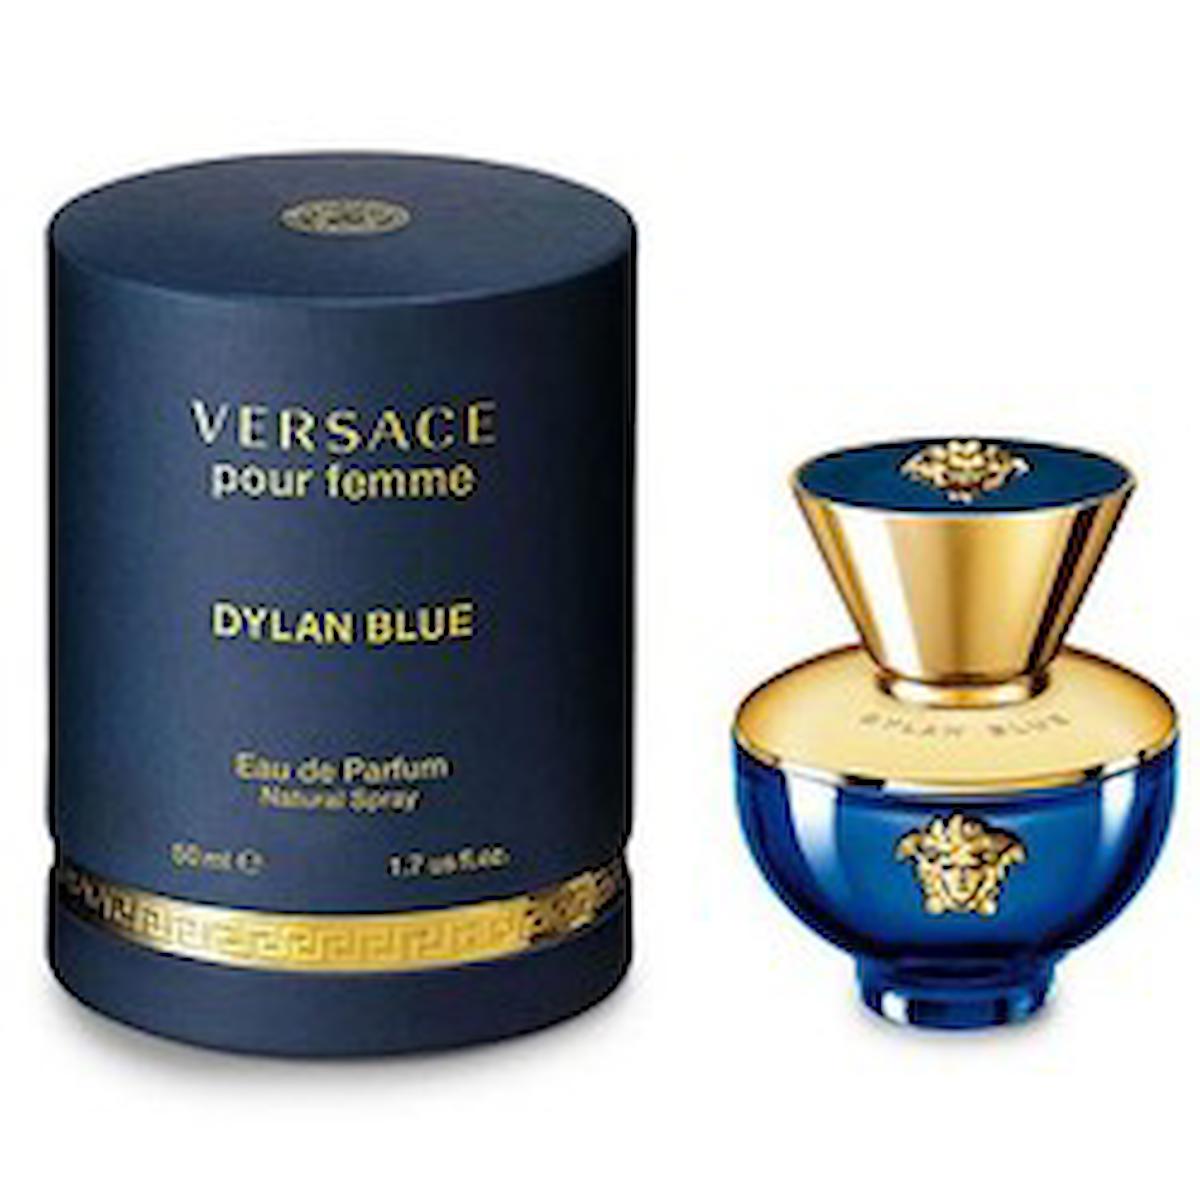 Versace Dylan Blue EDP Bergamot-Greyfurt Kadın Parfüm 50 ml